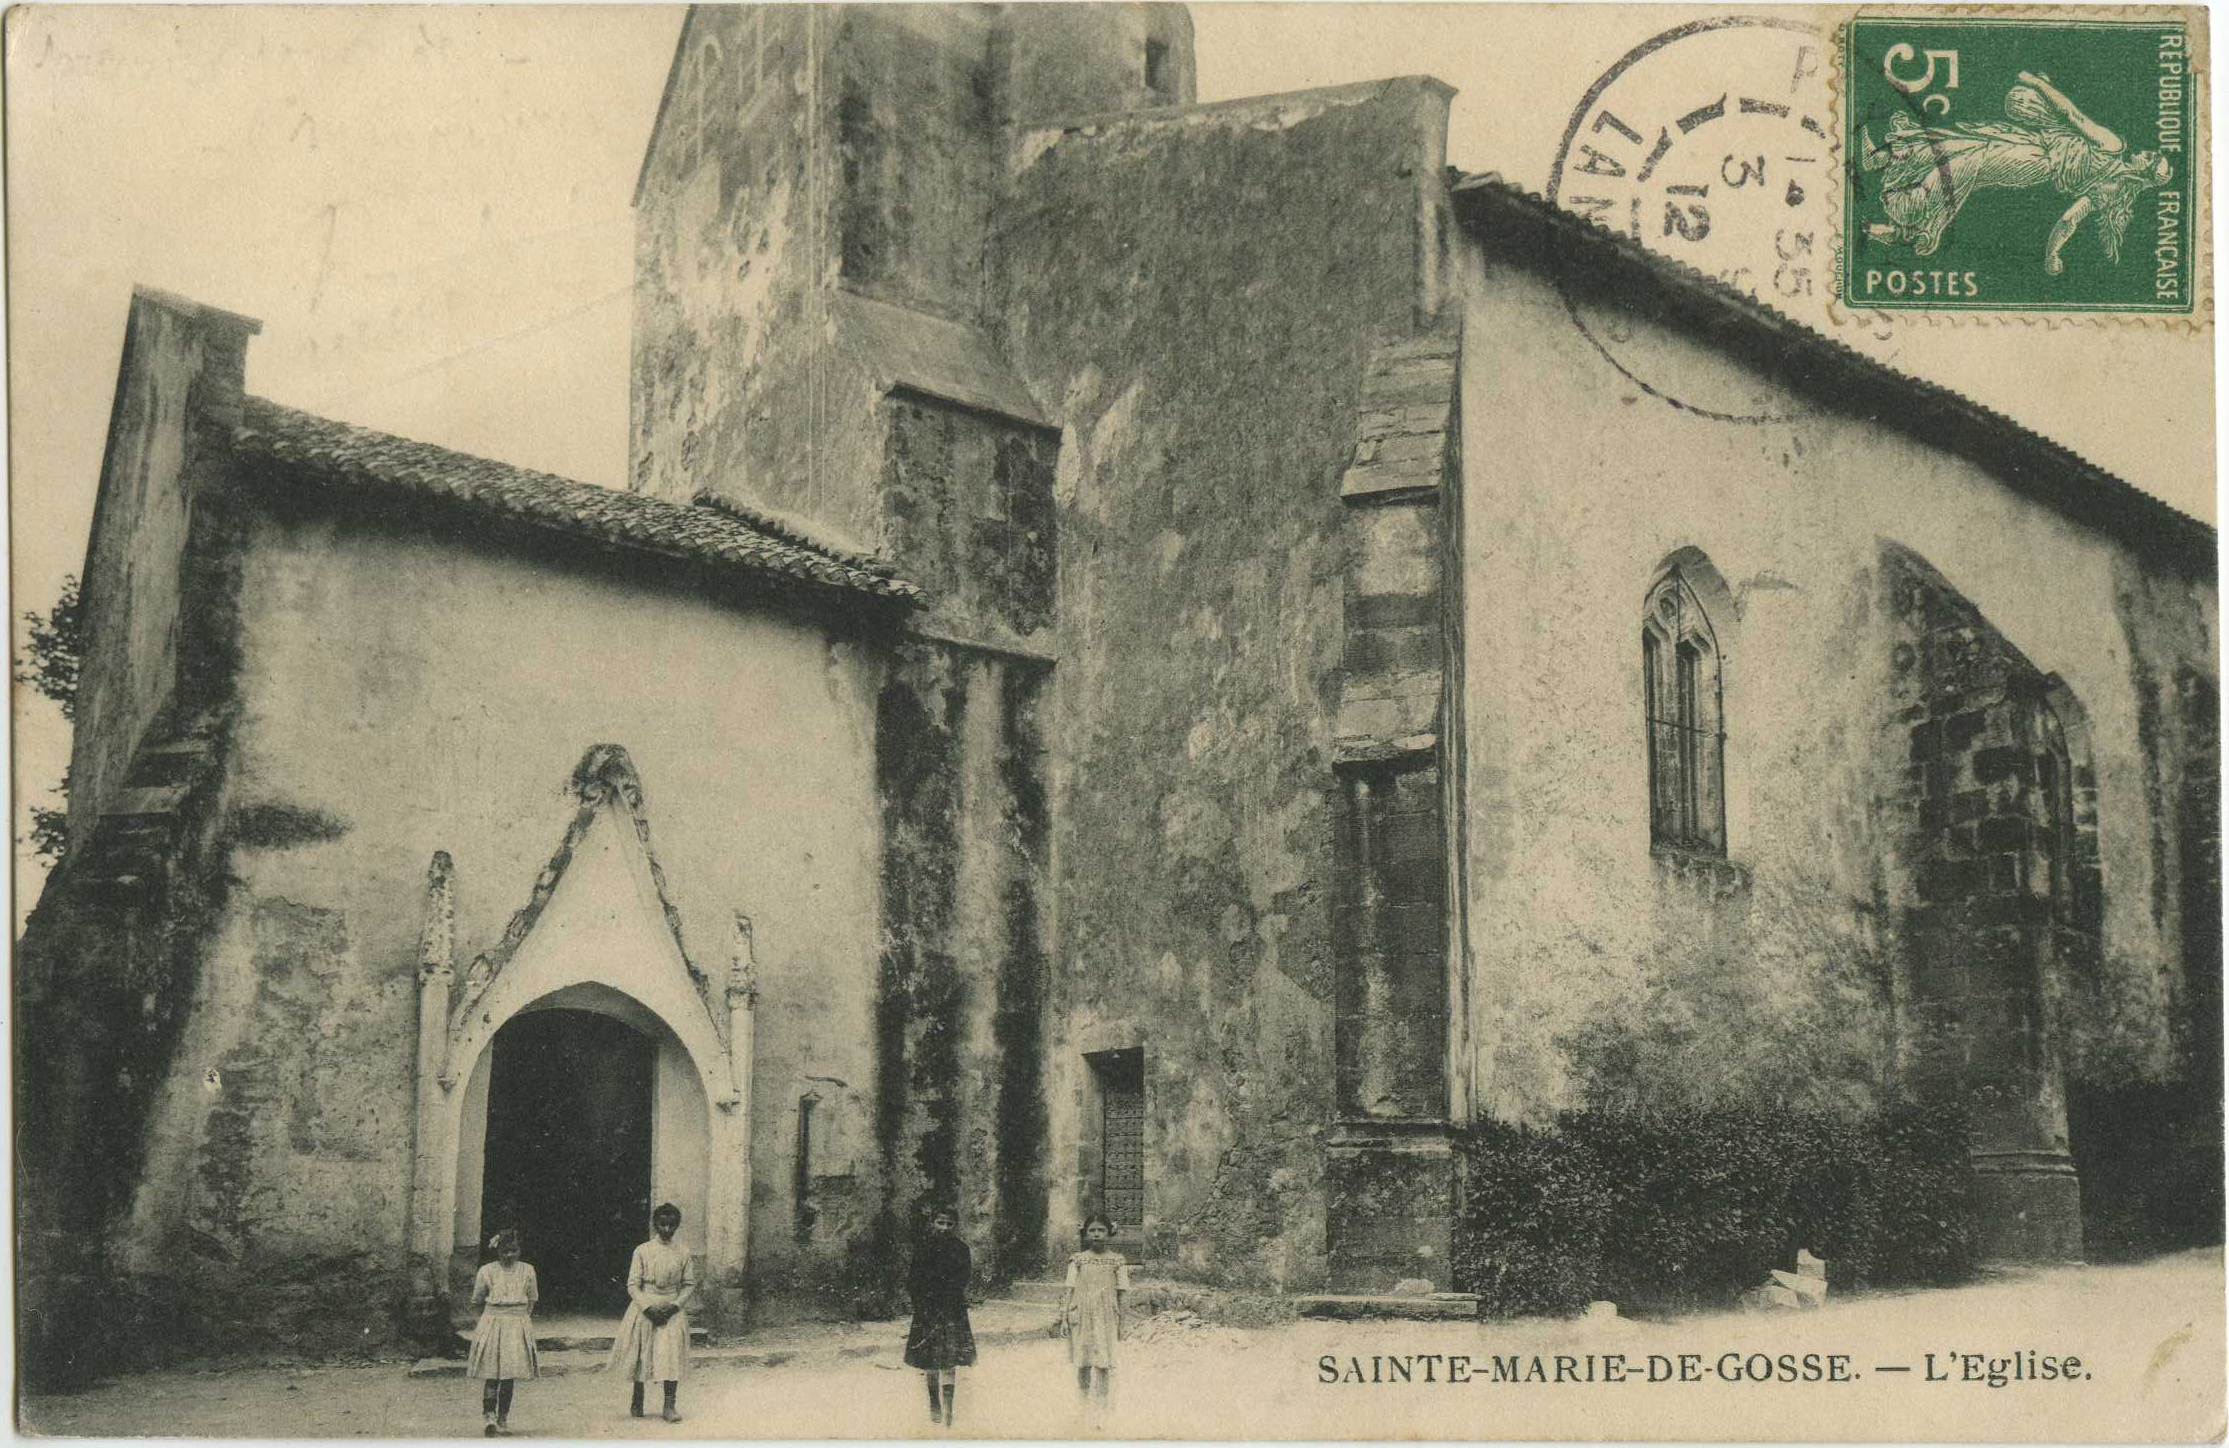 Sainte-Marie-de-Gosse - L'Eglise.